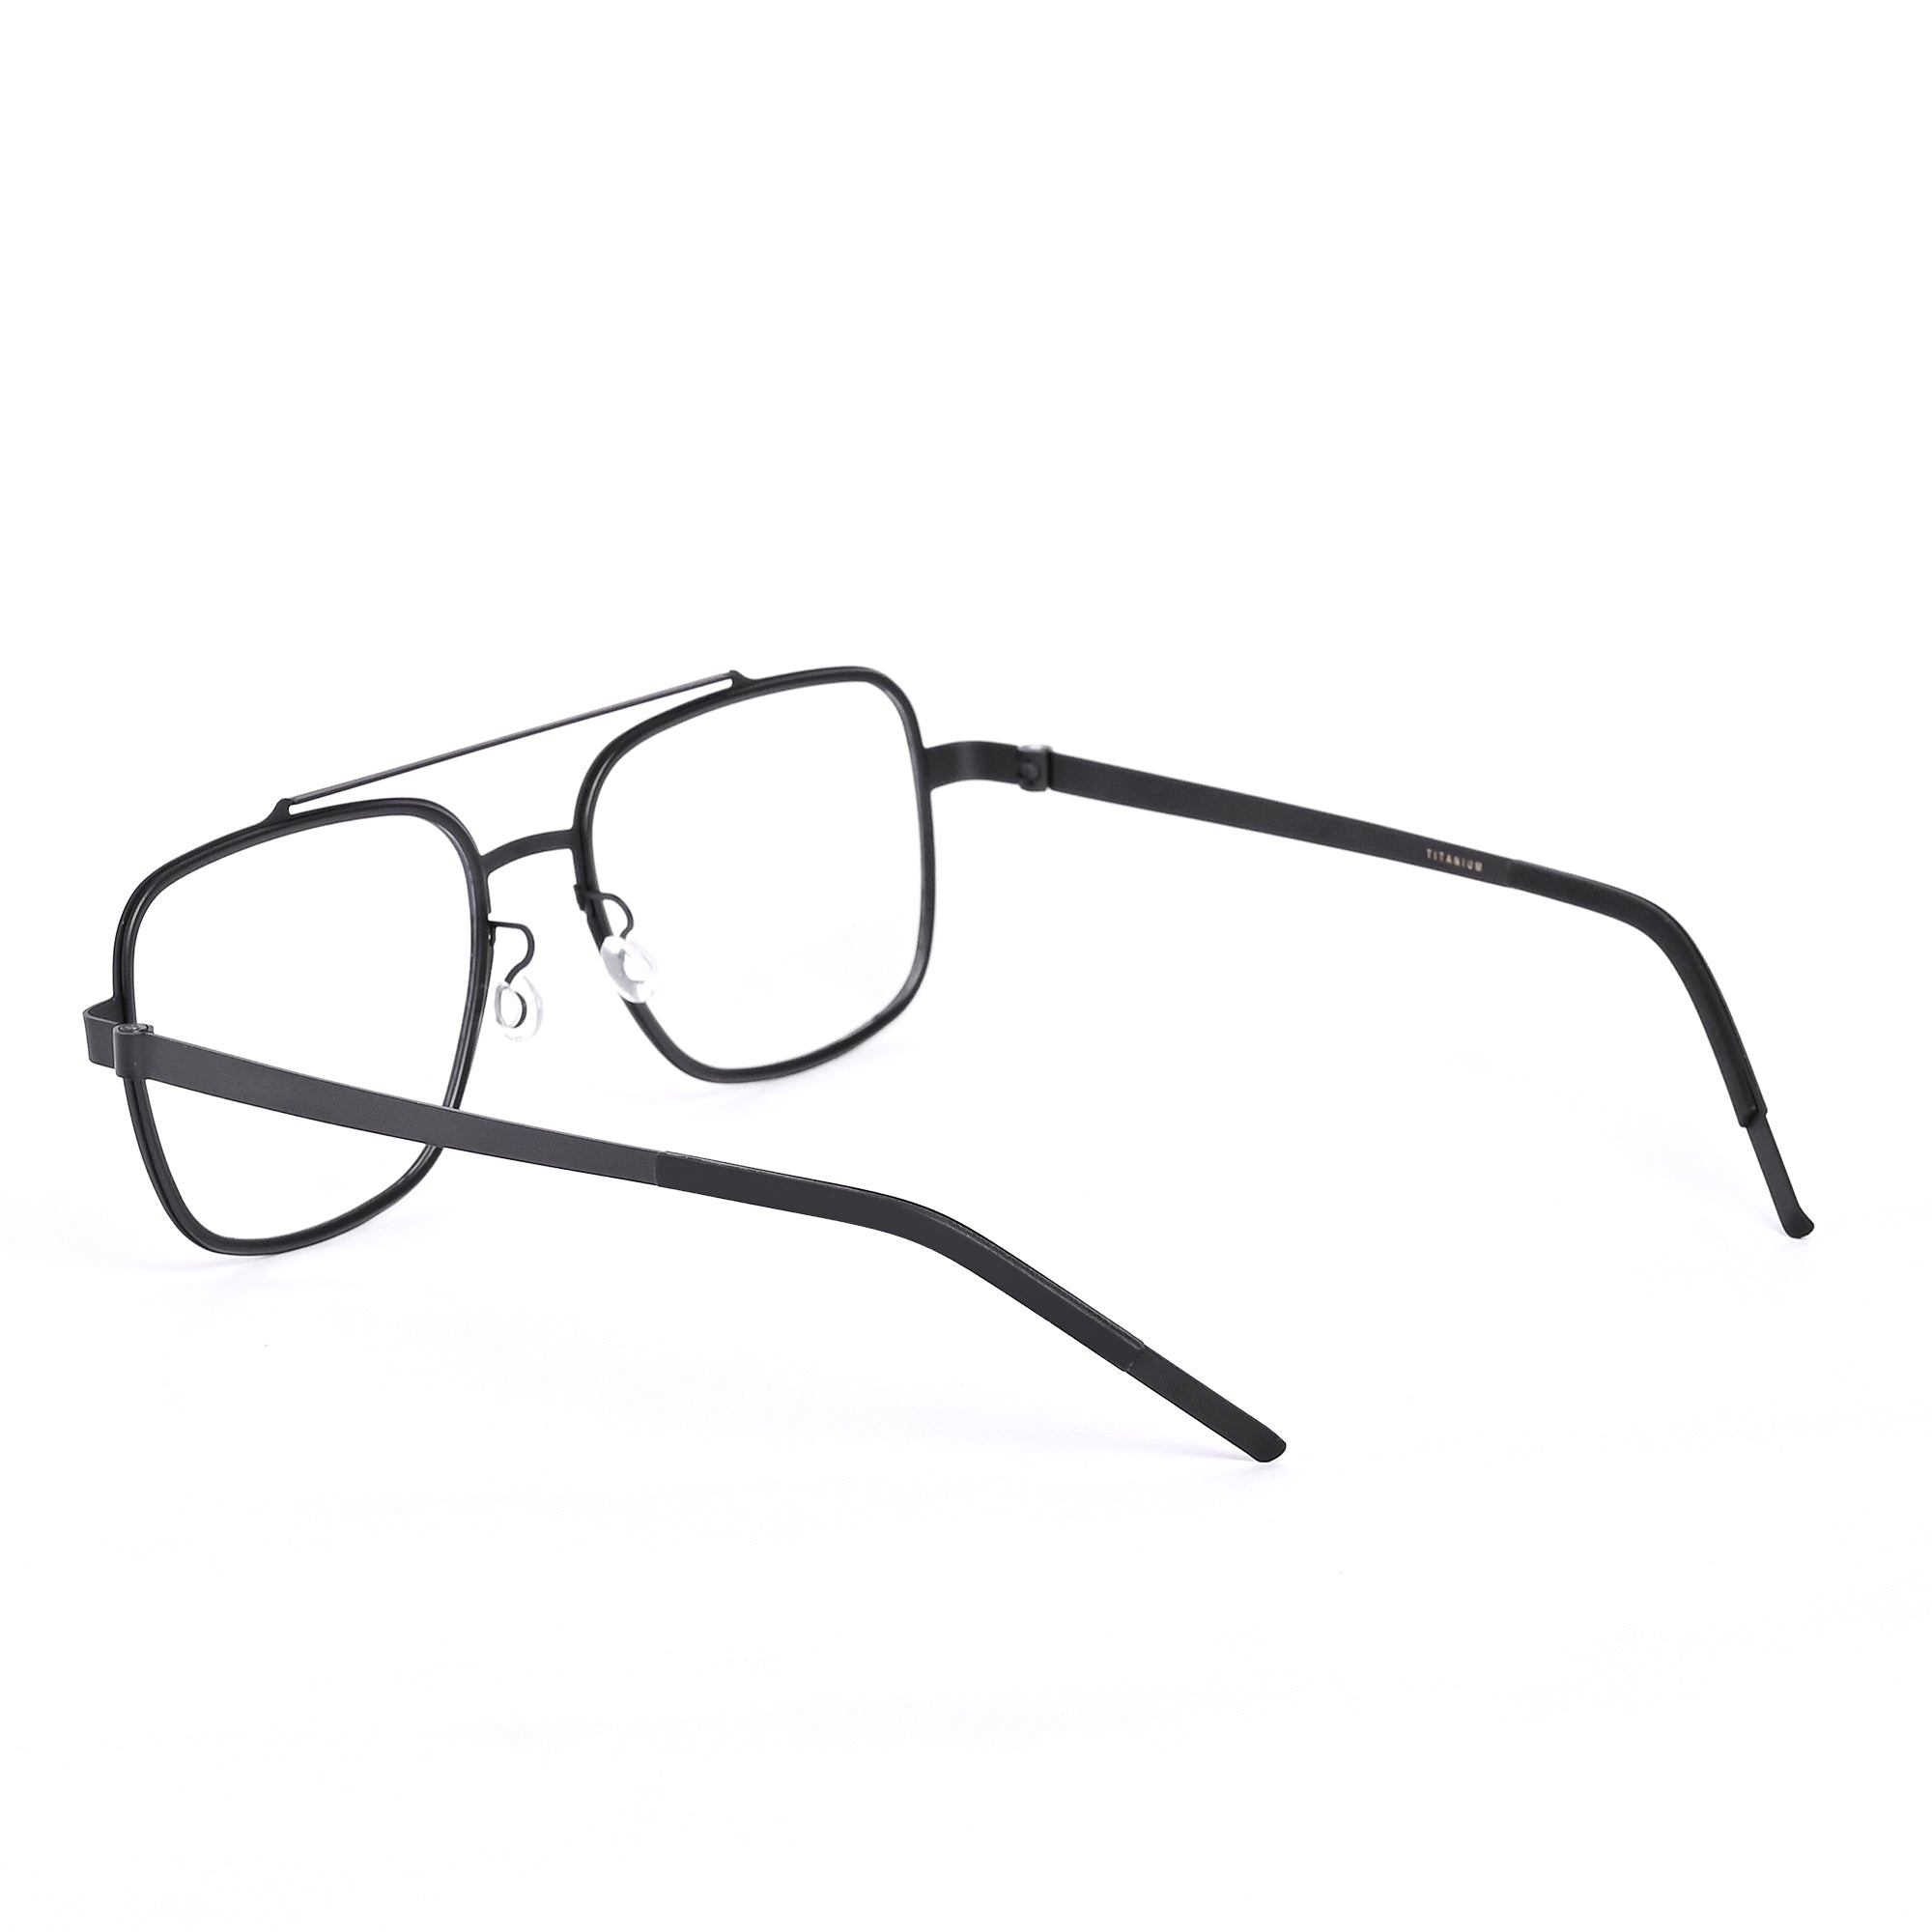 Black & Gray Square Titanium Eyeglasses - LG-006 BLGRY